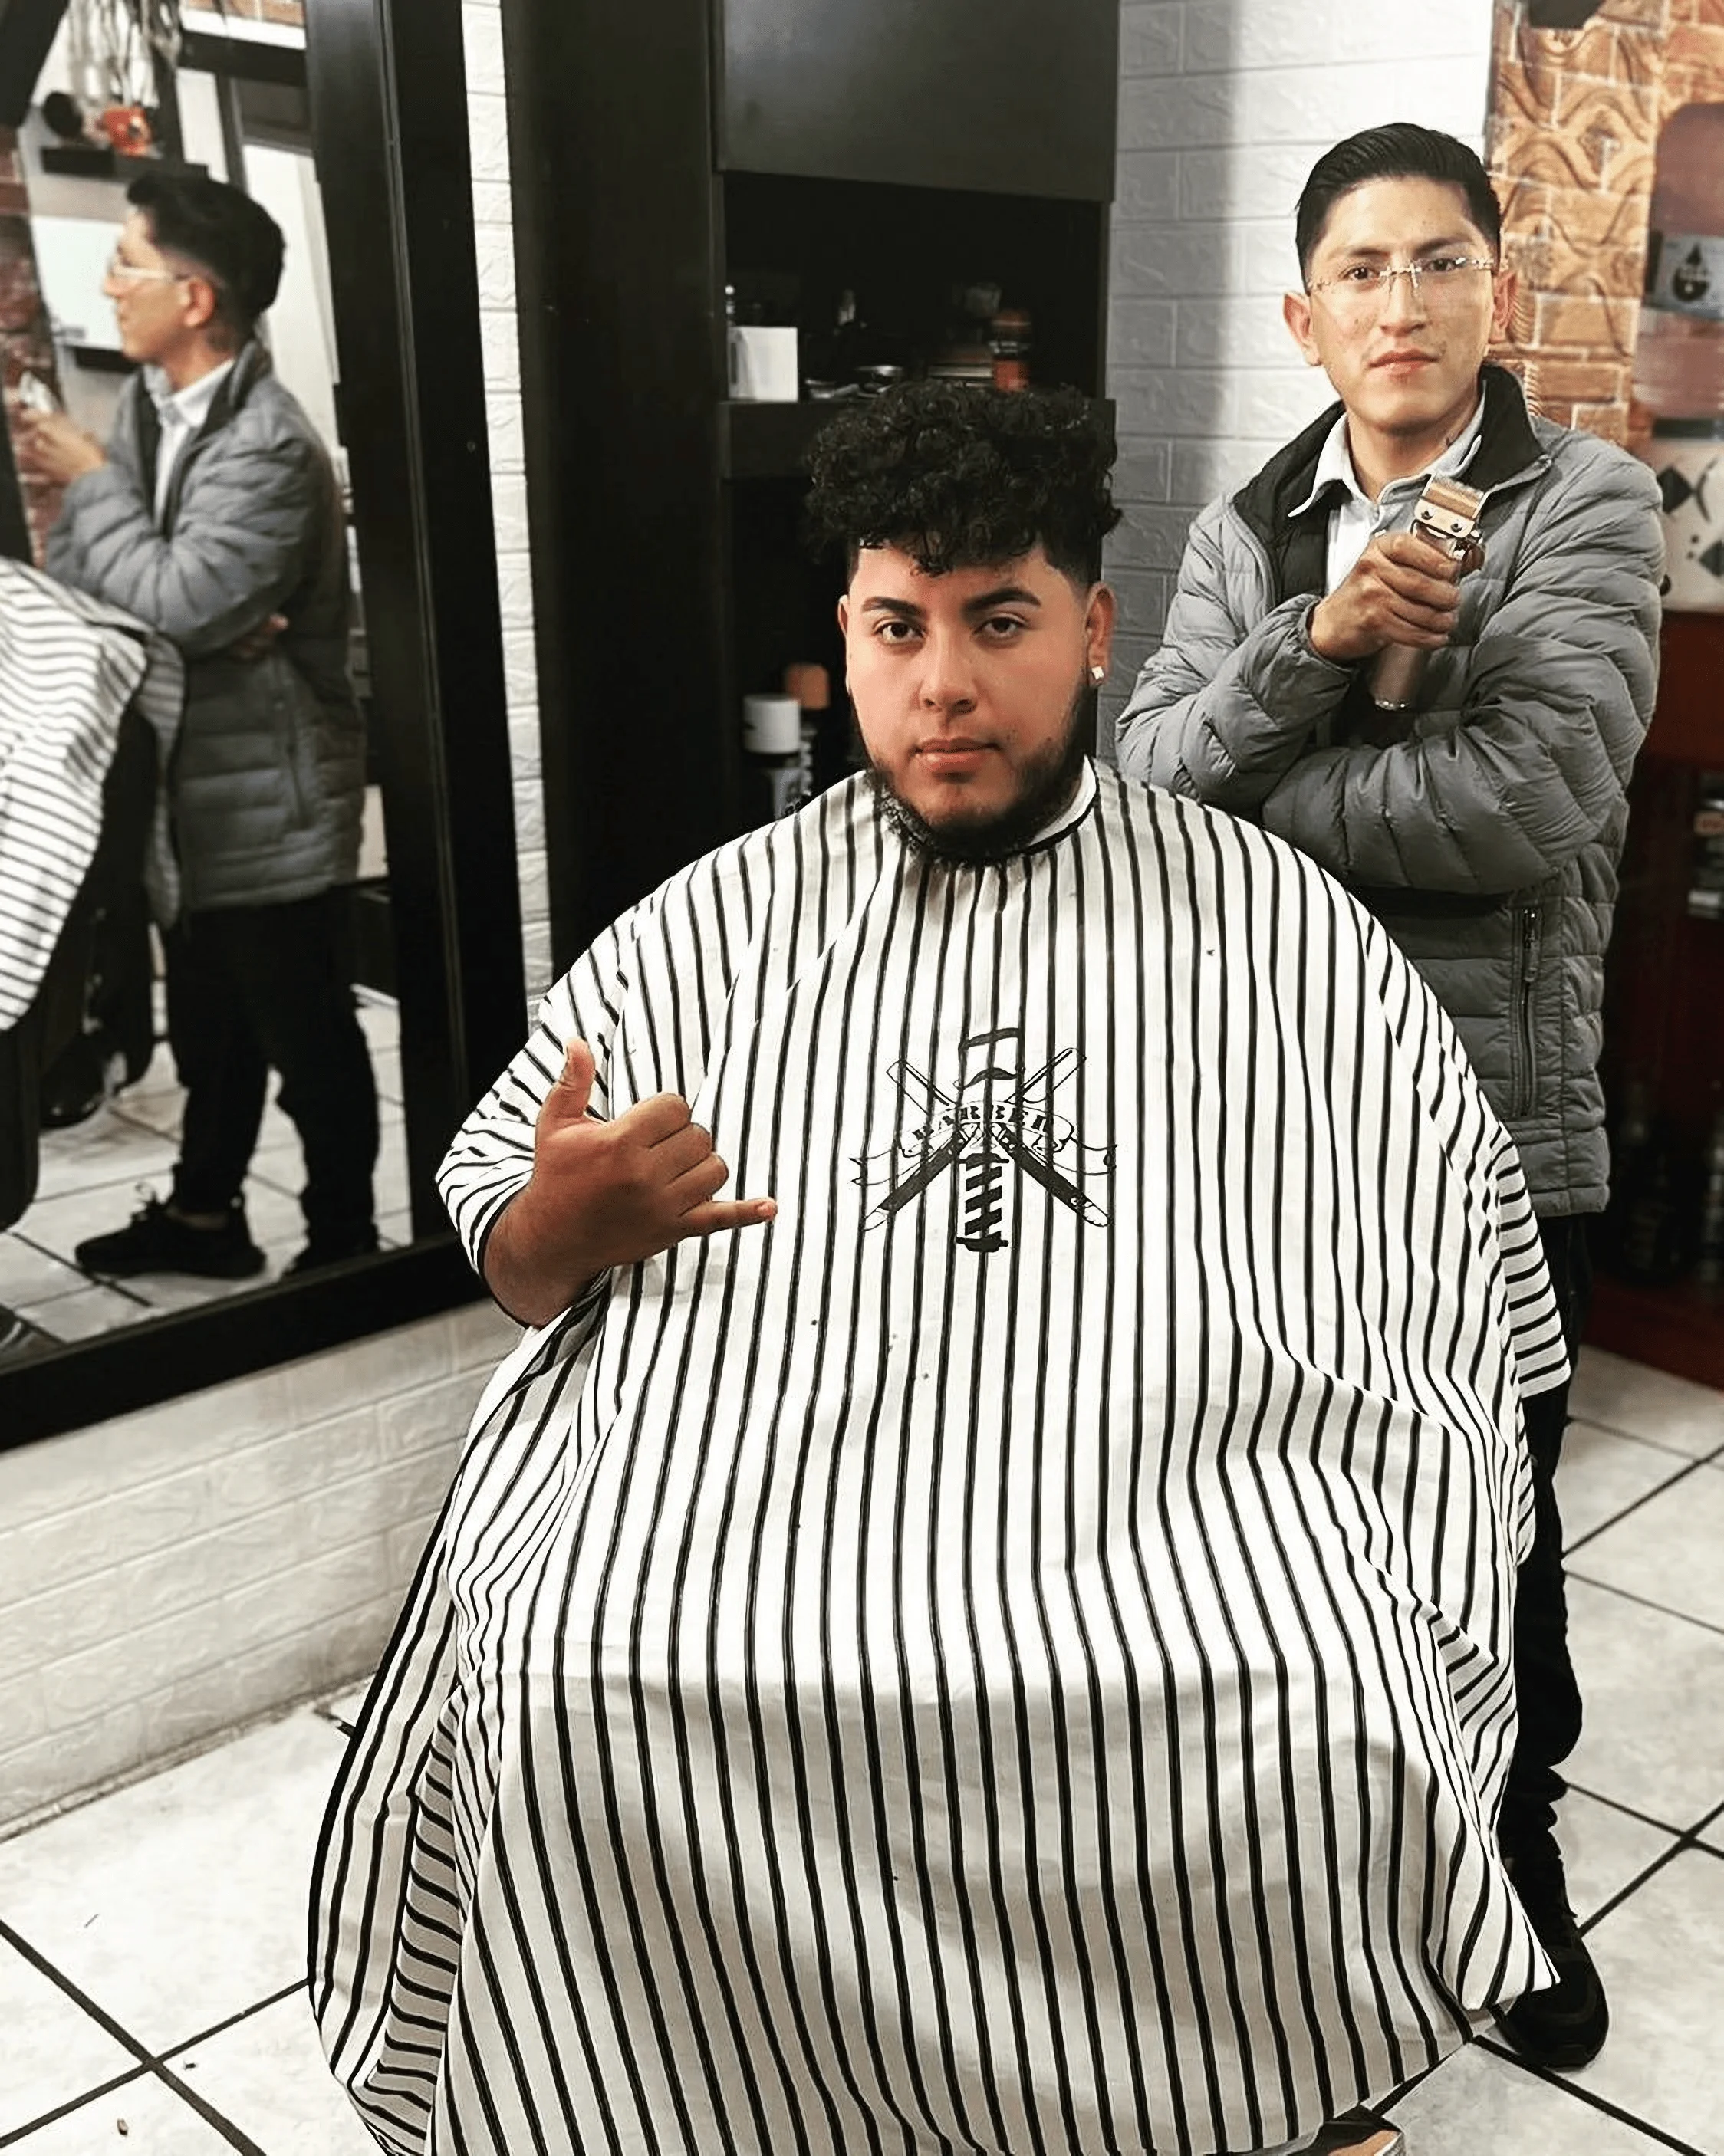 Barbería-barber-shop-niola-11826